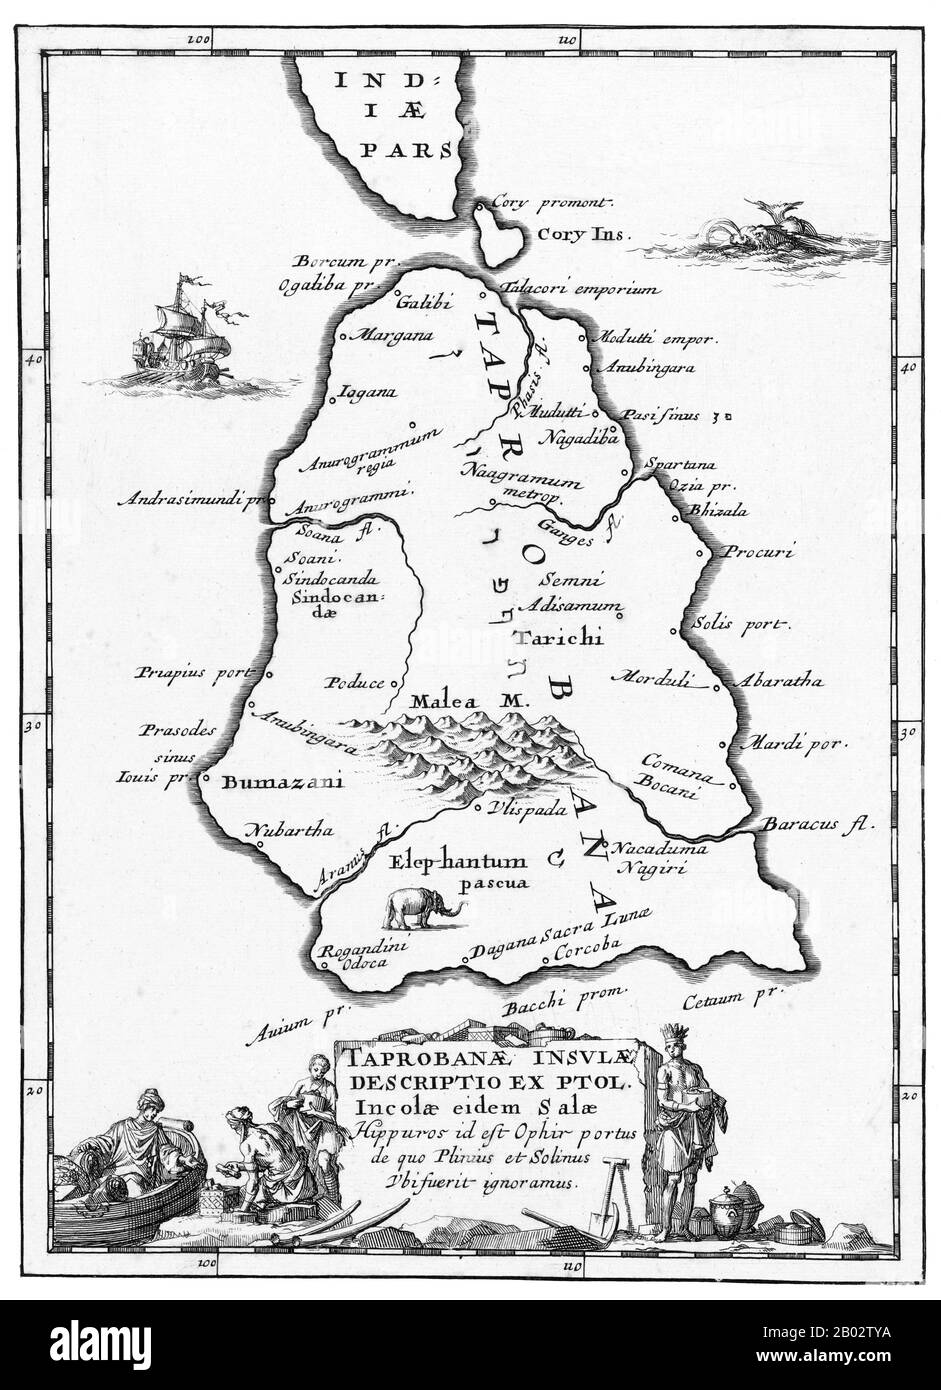 La société néerlandaise East India Company (VOC) a été créée en 1602 pour obtenir un pied dans les Indes de l'est (Indonésie) pour les Néerlandais dans le commerce lucratif d'épices, qui jusqu'à ce point était dominé par les Portugais. C'est une société à charte qui a accordé le monopole du gouvernement néerlandais pour mener des activités coloniales en Asie, y compris l'établissement de colonies à Ceylon (Sri Lanka) et en Inde. Banque D'Images